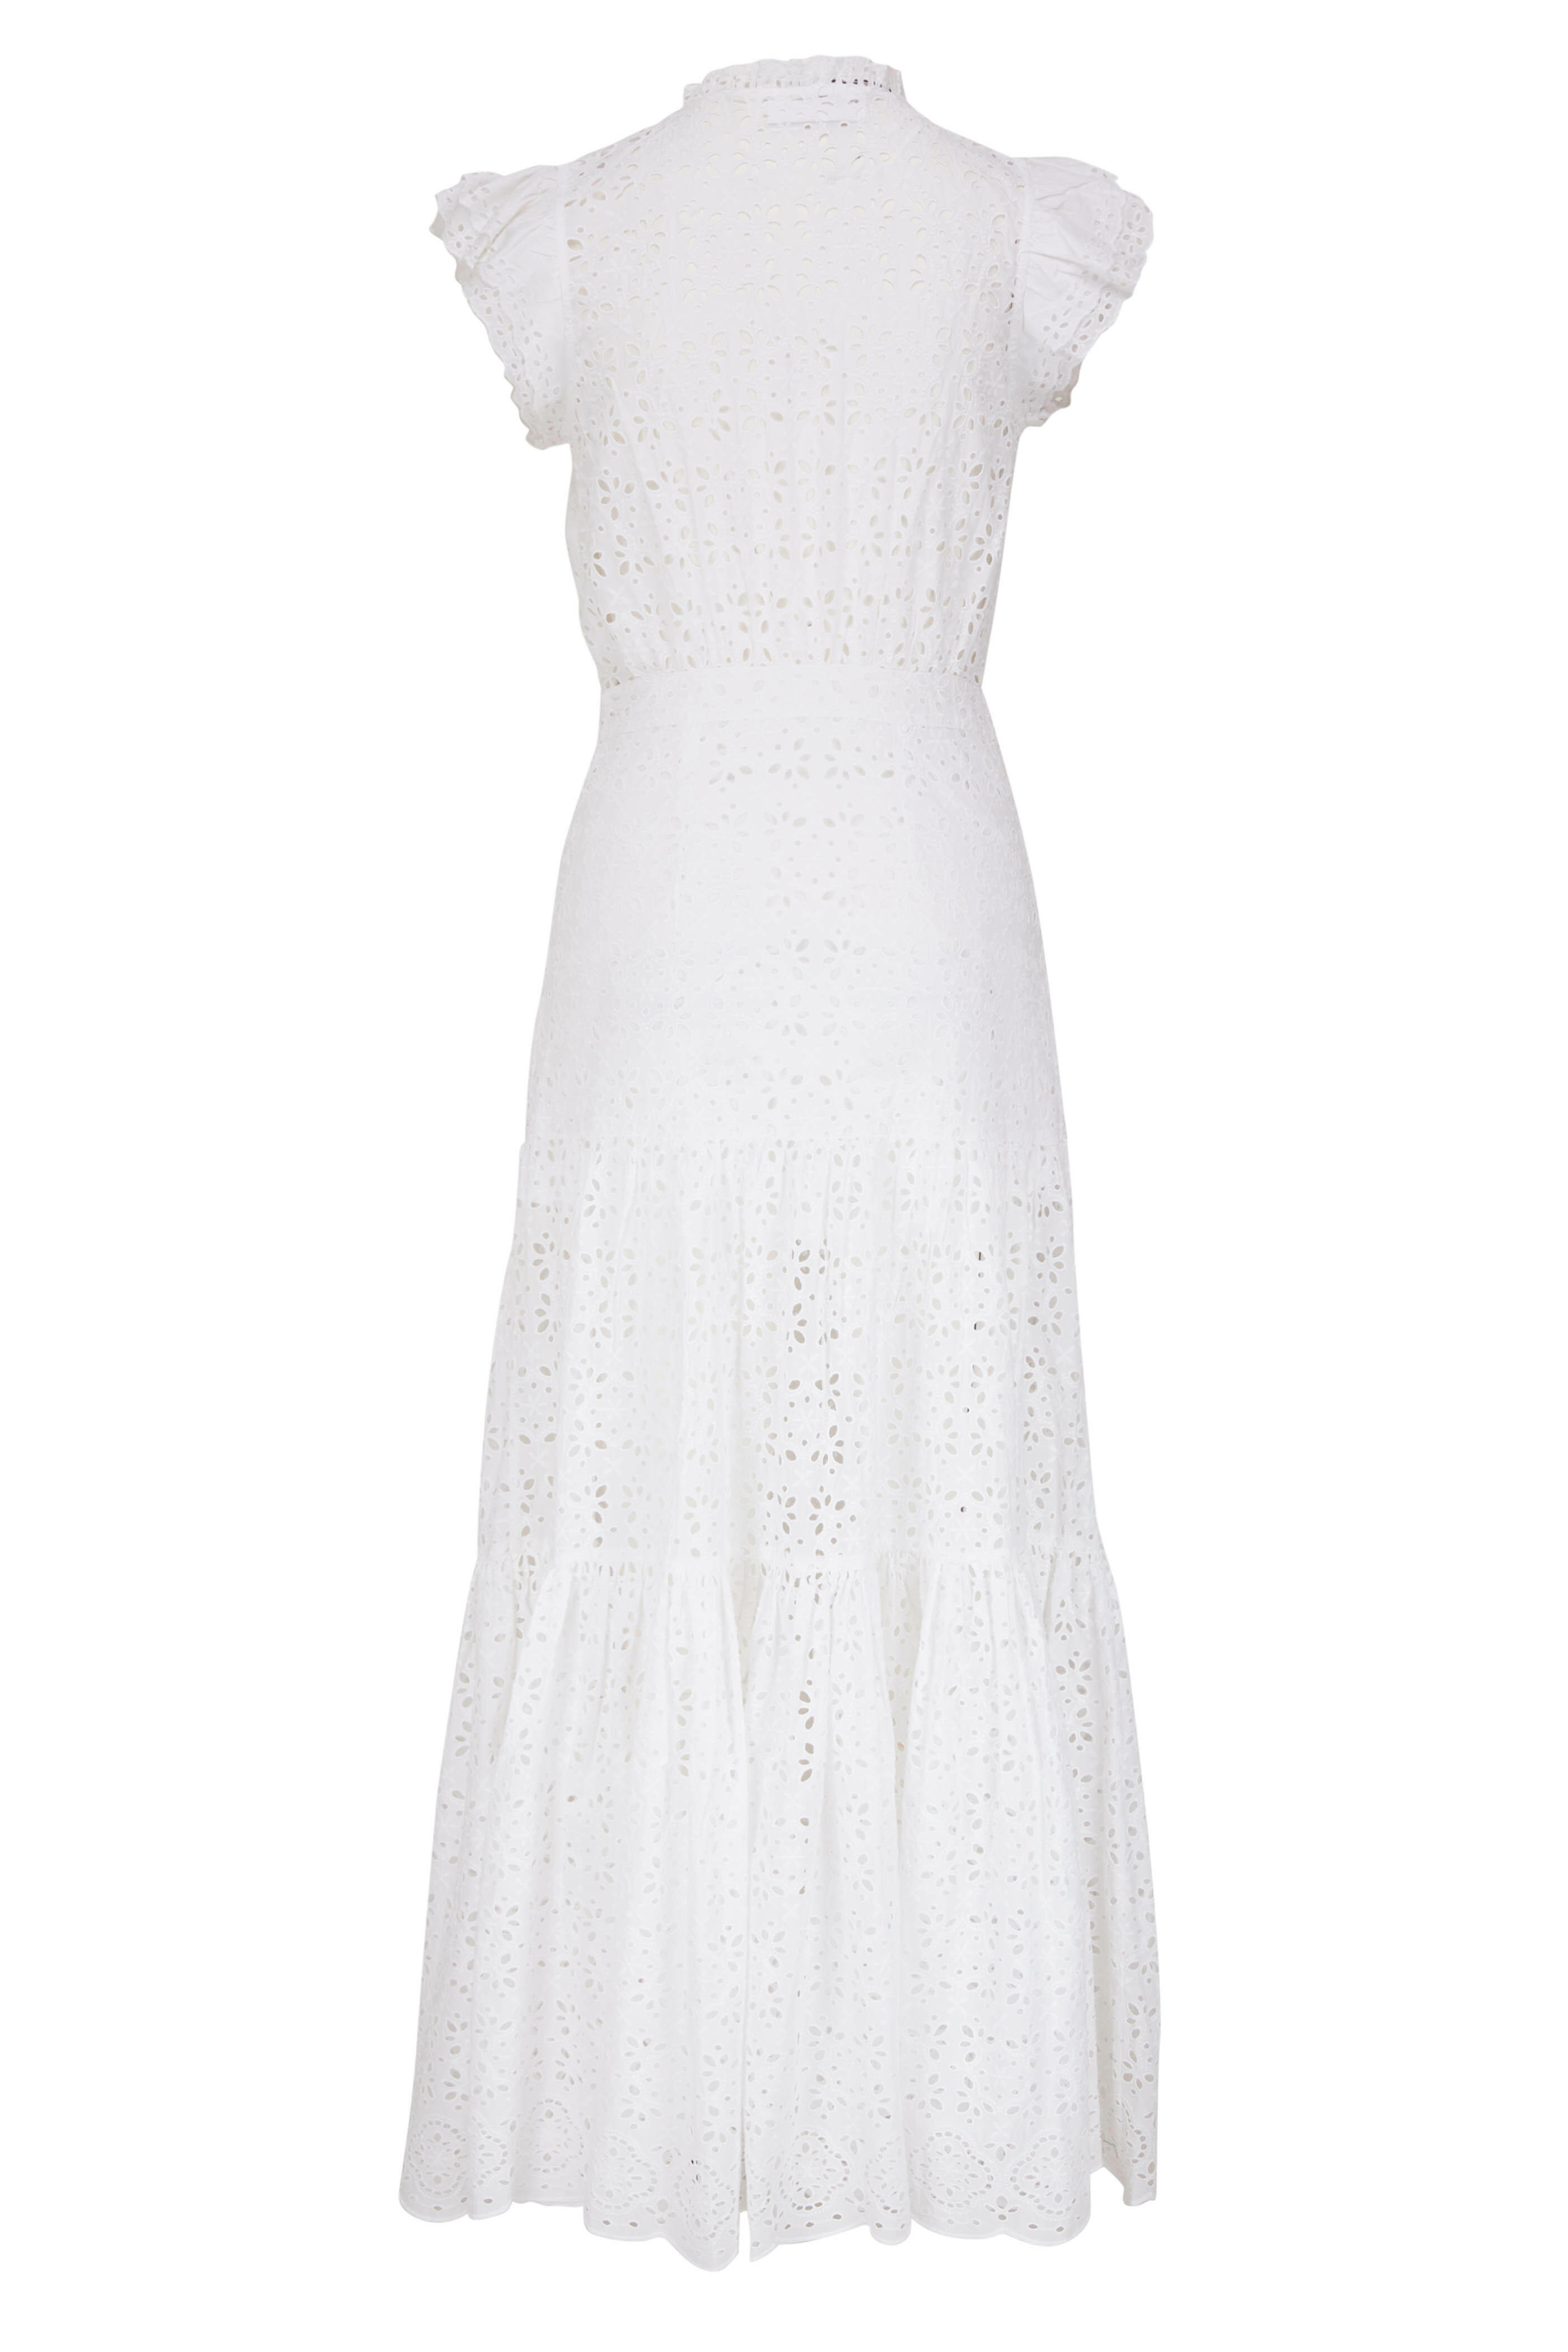 Veronica Beard - Satori White Eyelet Maxi Dress | Mitchell Stores